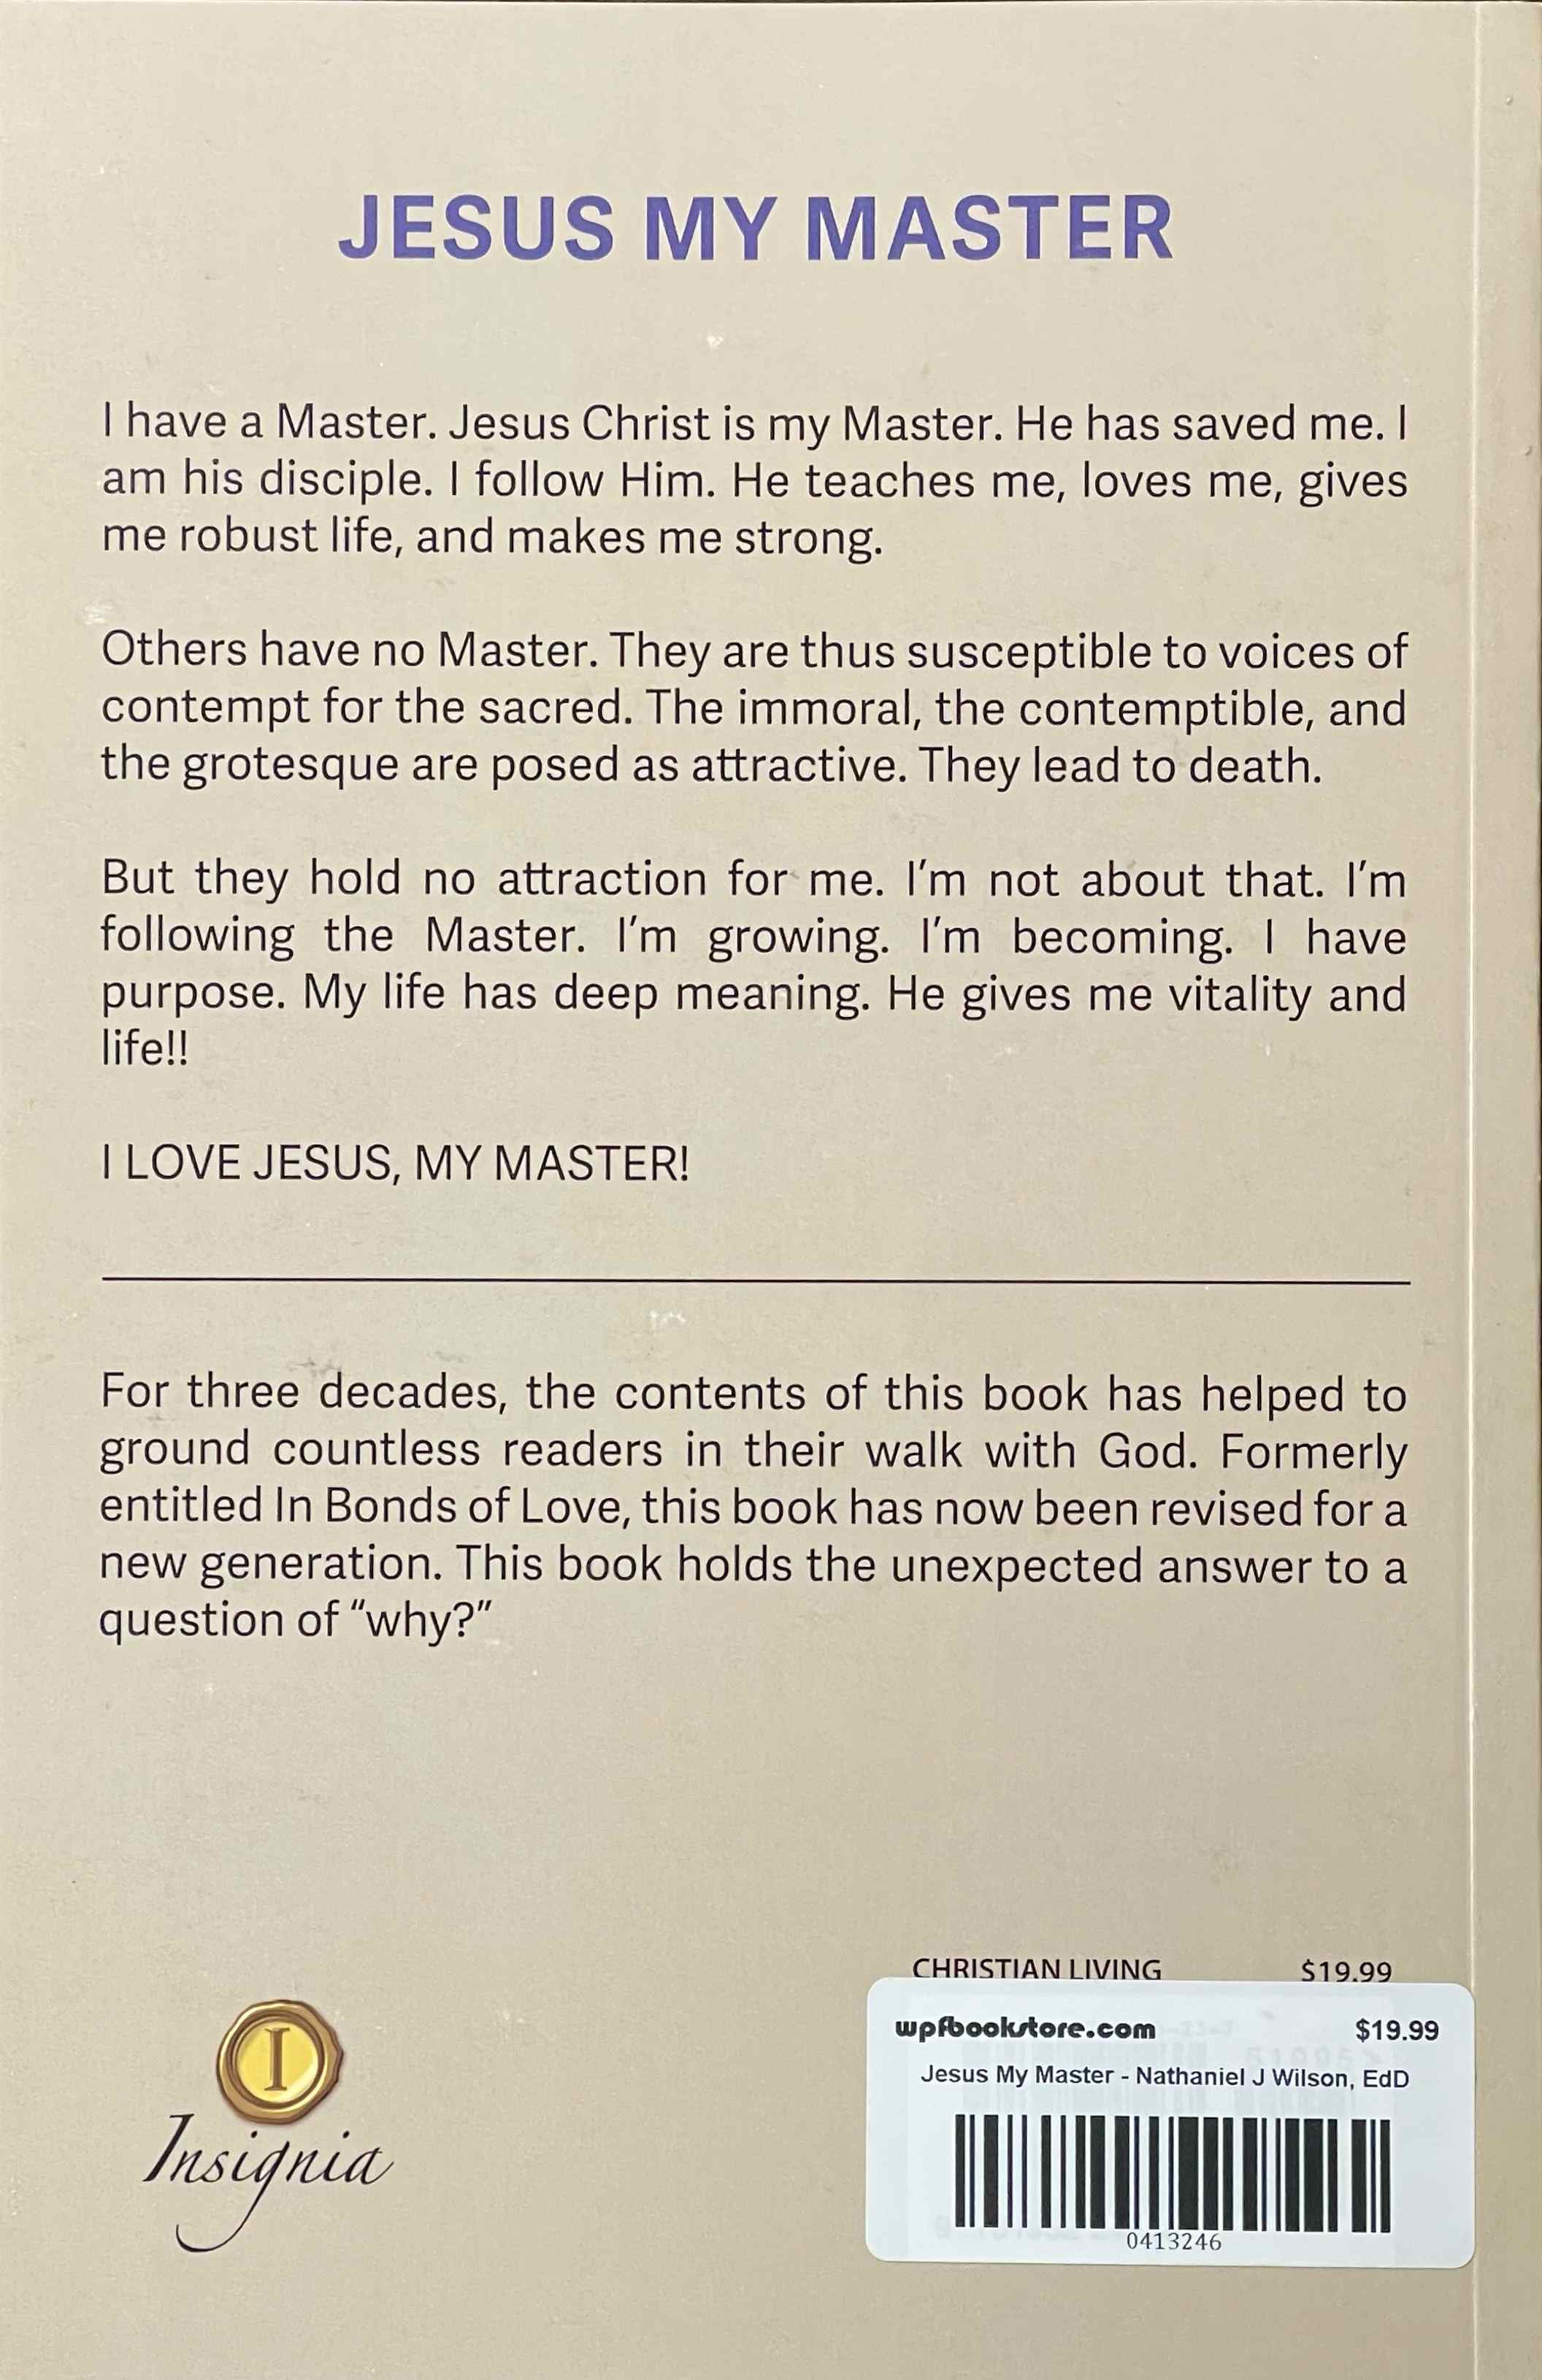 Jesus My Master - N J Wilson, EdD